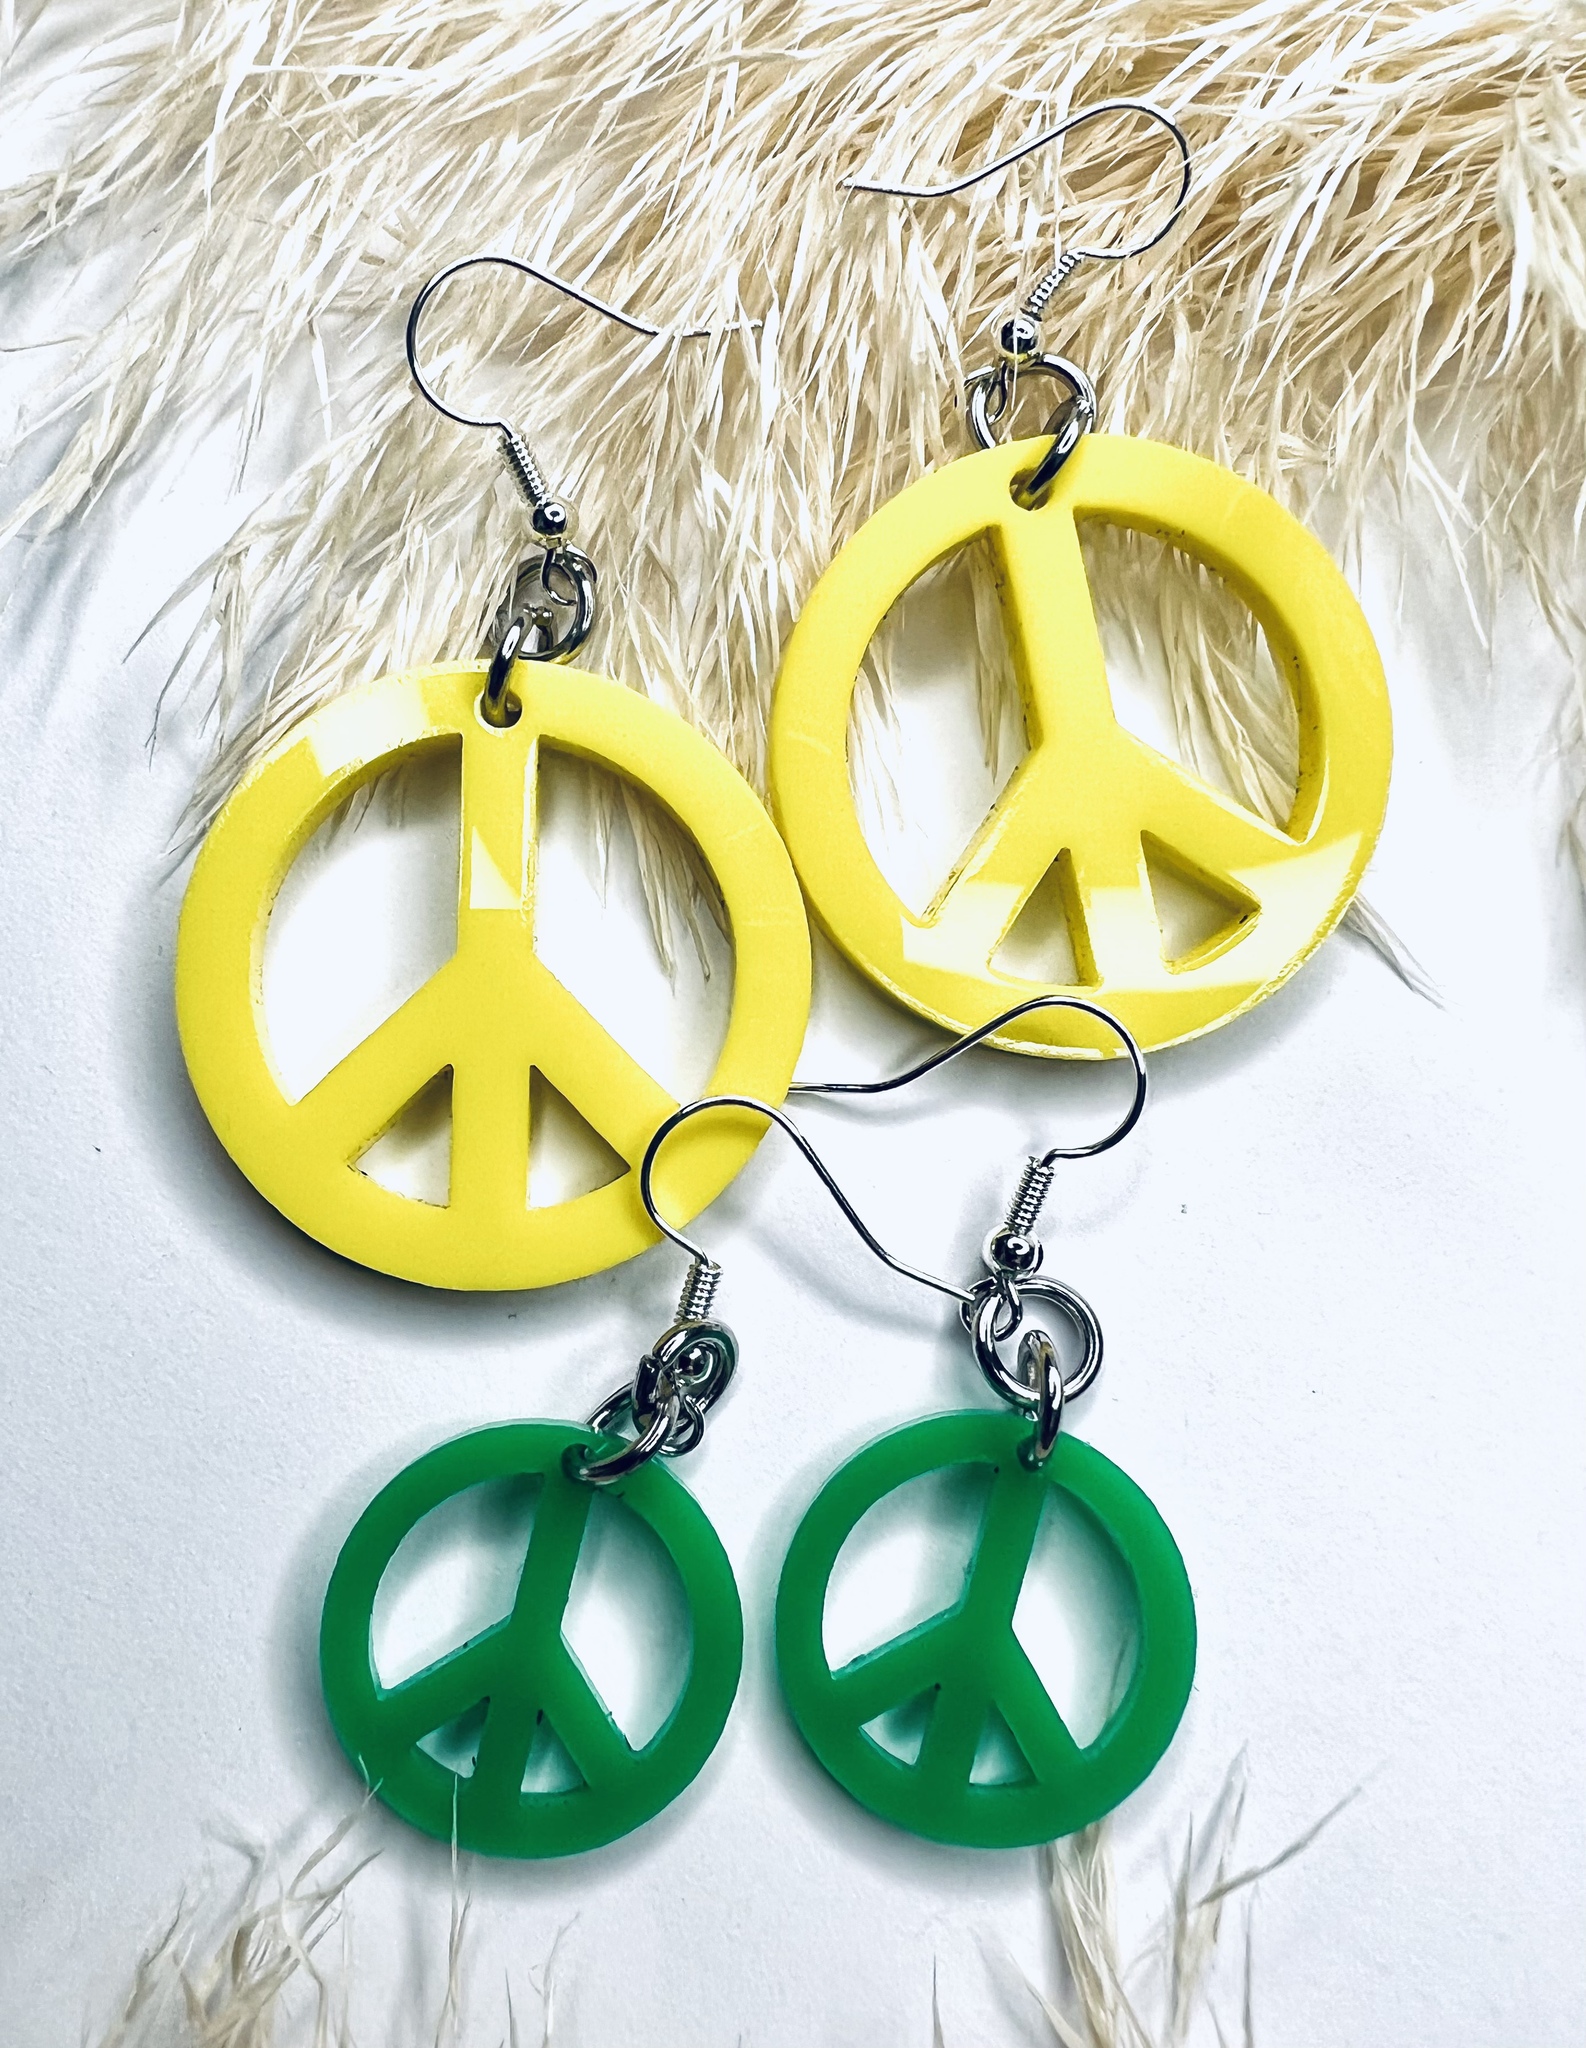 Peace! - olika färger